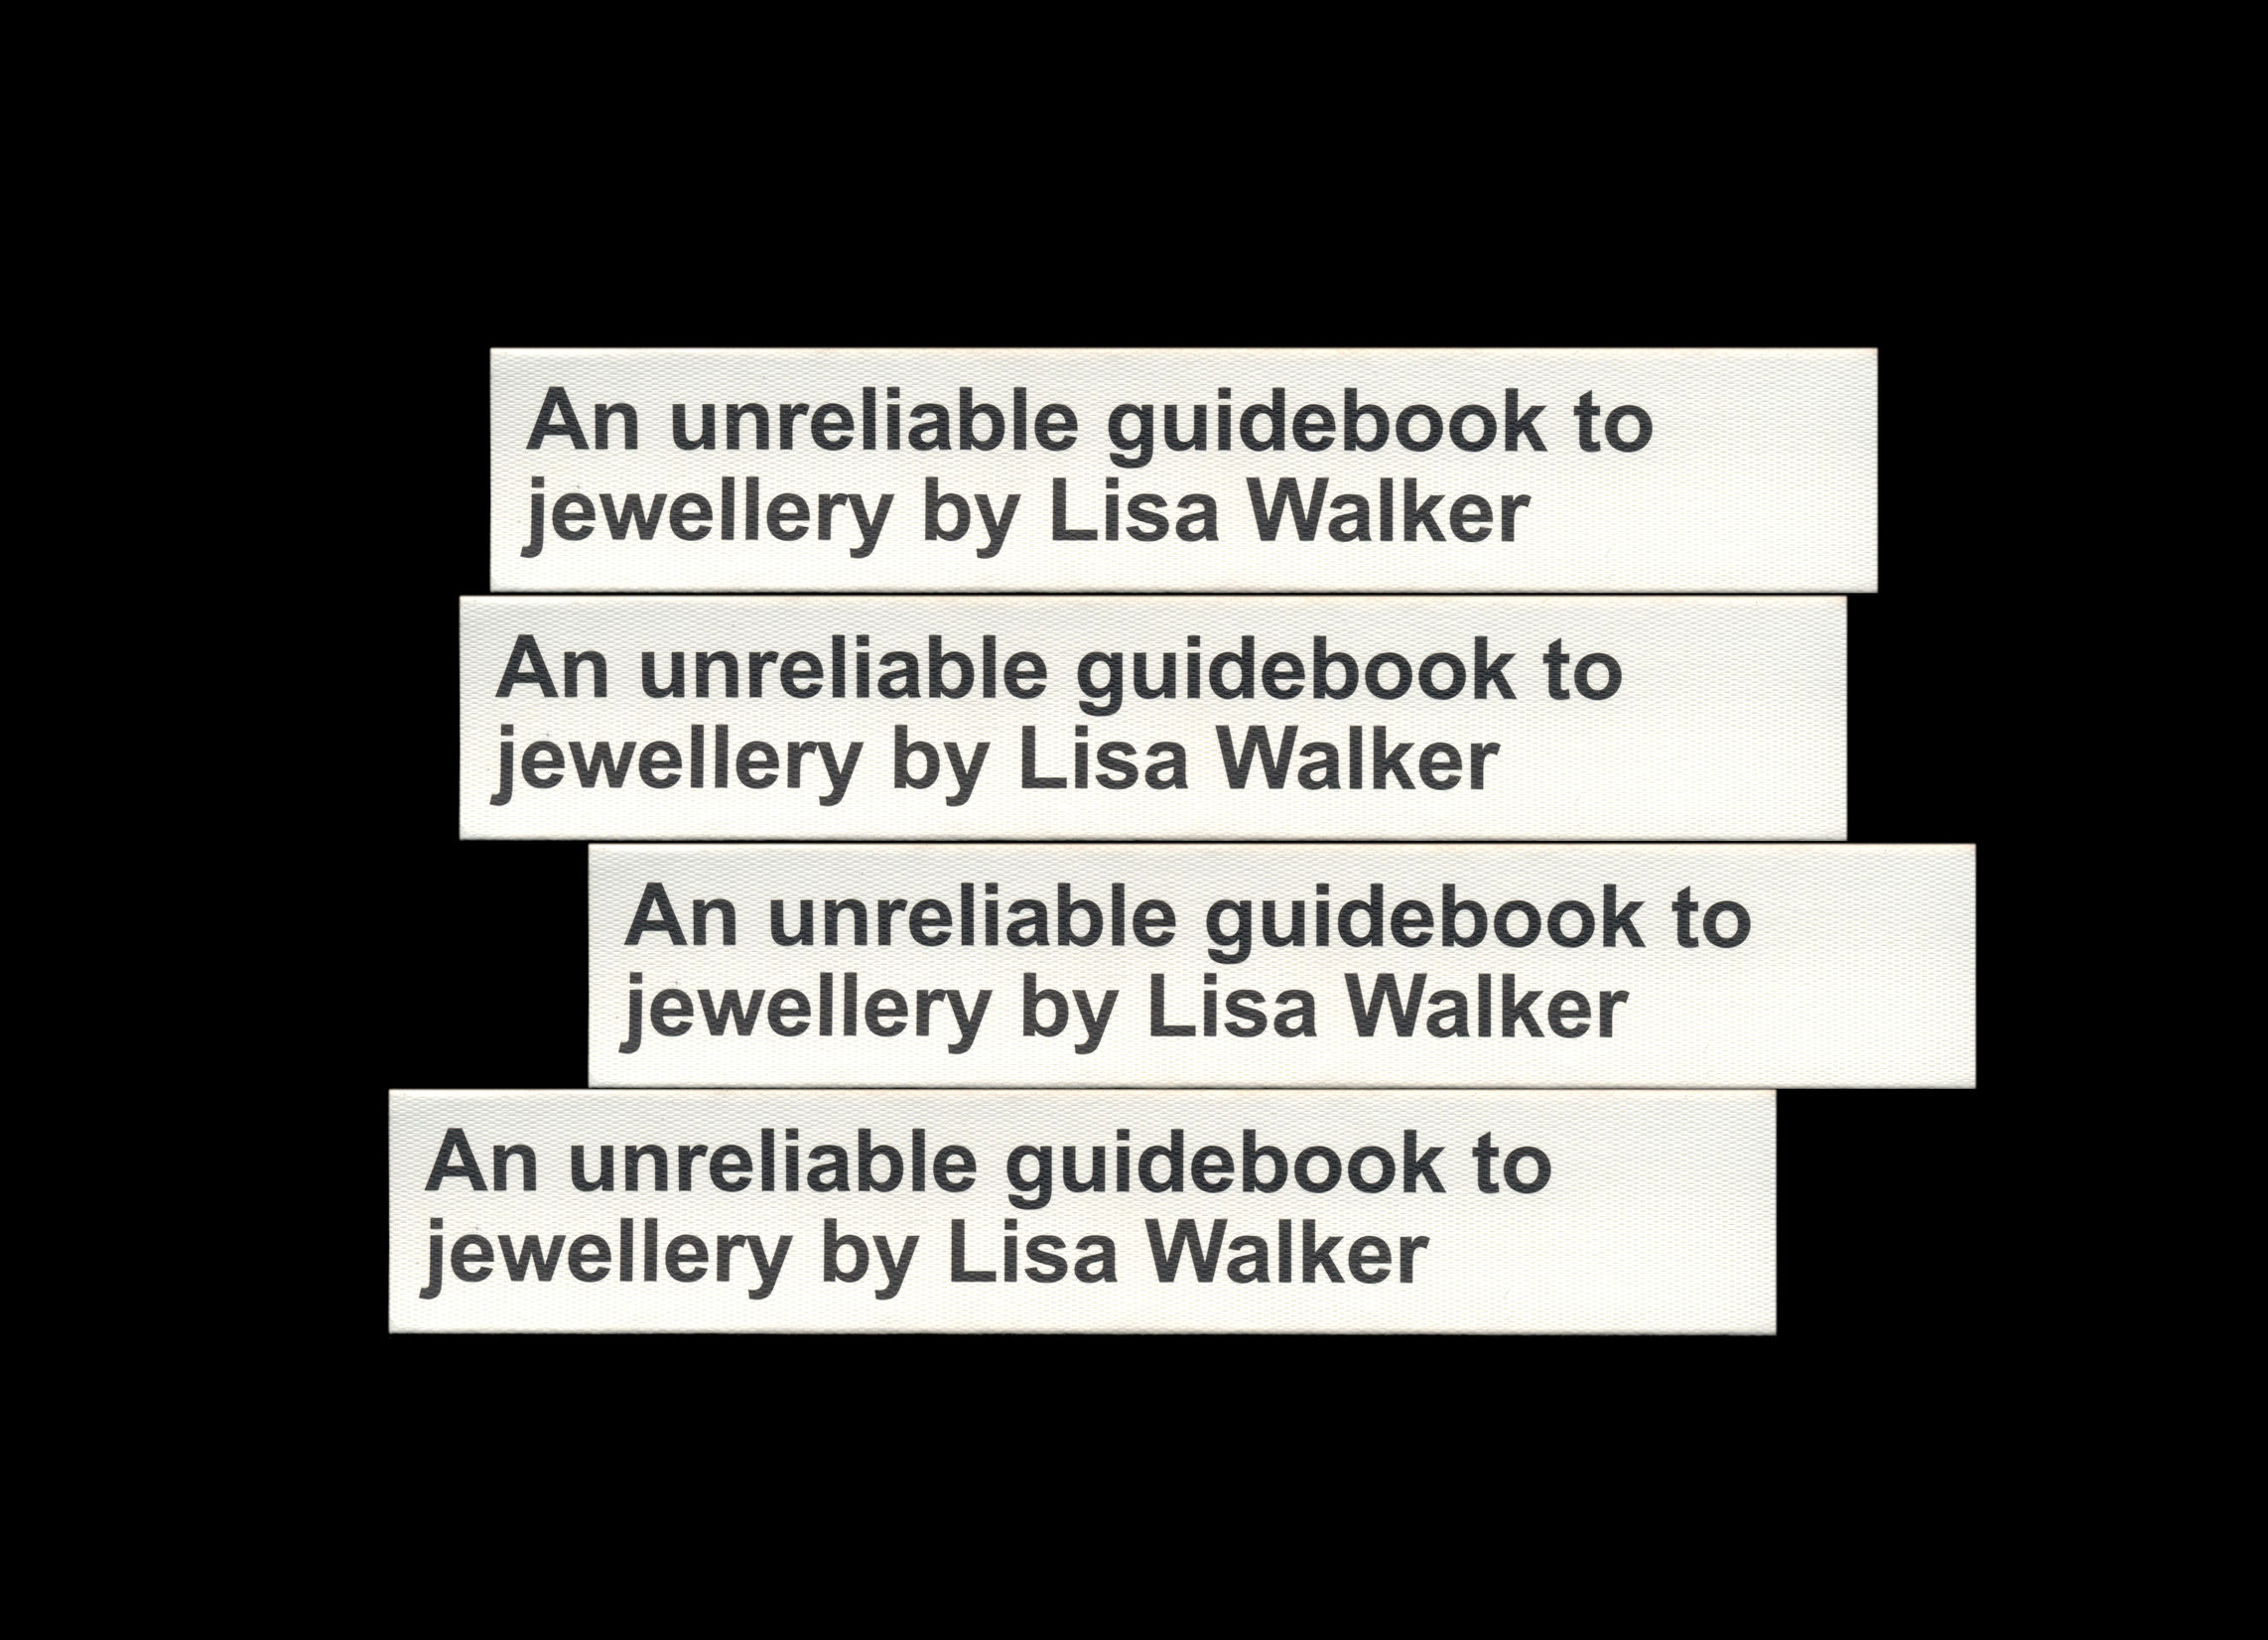 mejor-diseno-libro-revista-magazine-mes-unrealiable-guidebook-jewellery-09